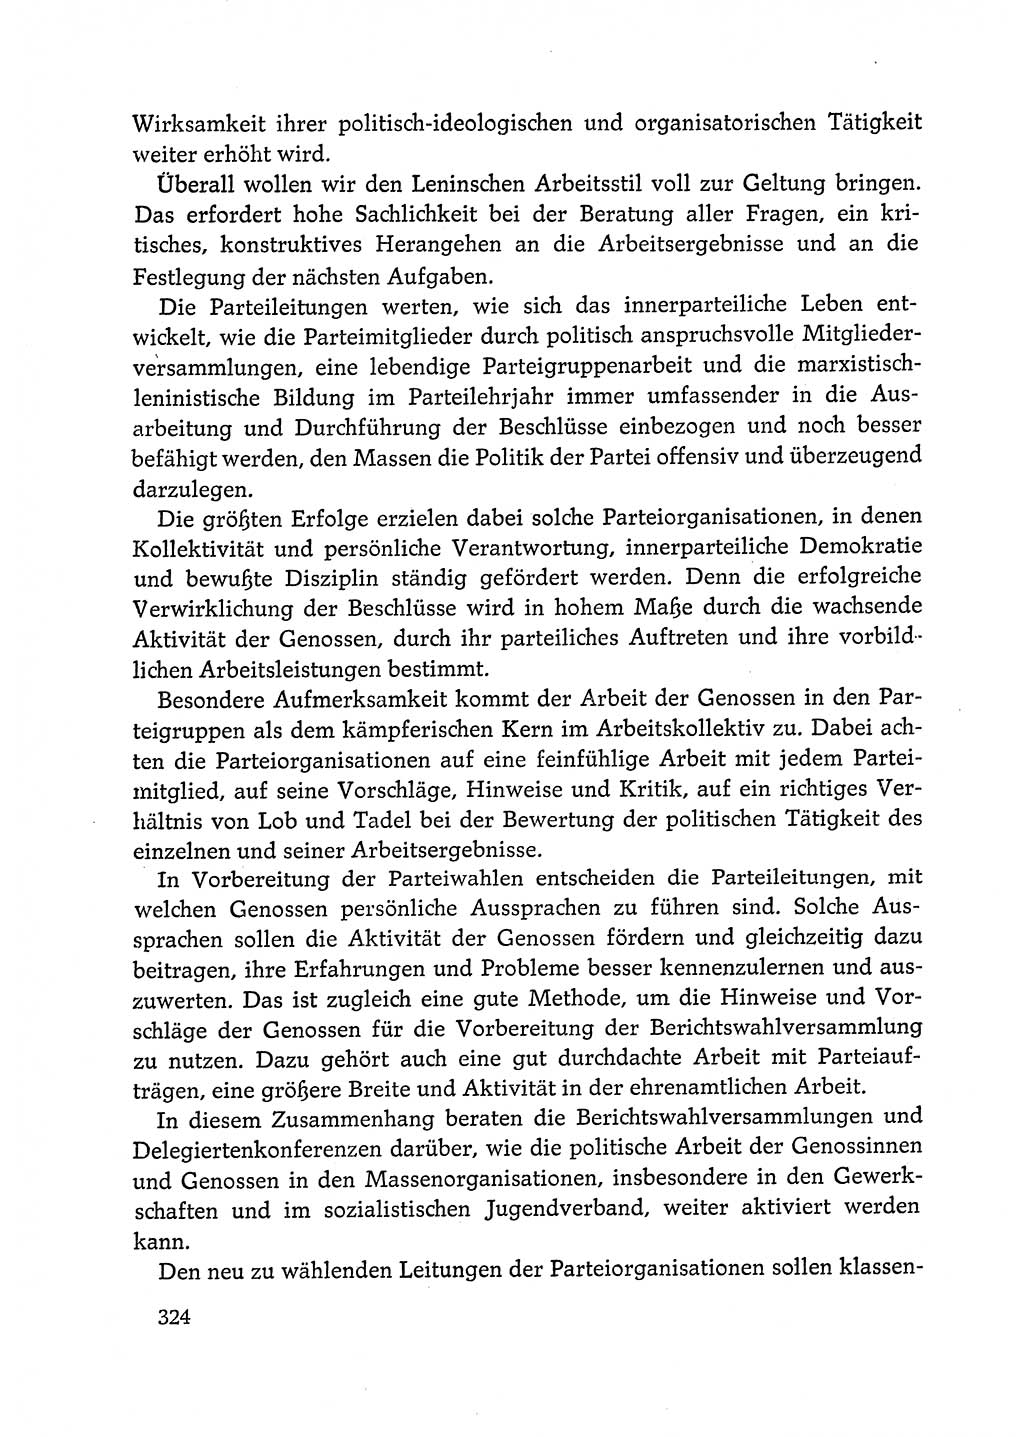 Dokumente der Sozialistischen Einheitspartei Deutschlands (SED) [Deutsche Demokratische Republik (DDR)] 1972-1973, Seite 324 (Dok. SED DDR 1972-1973, S. 324)